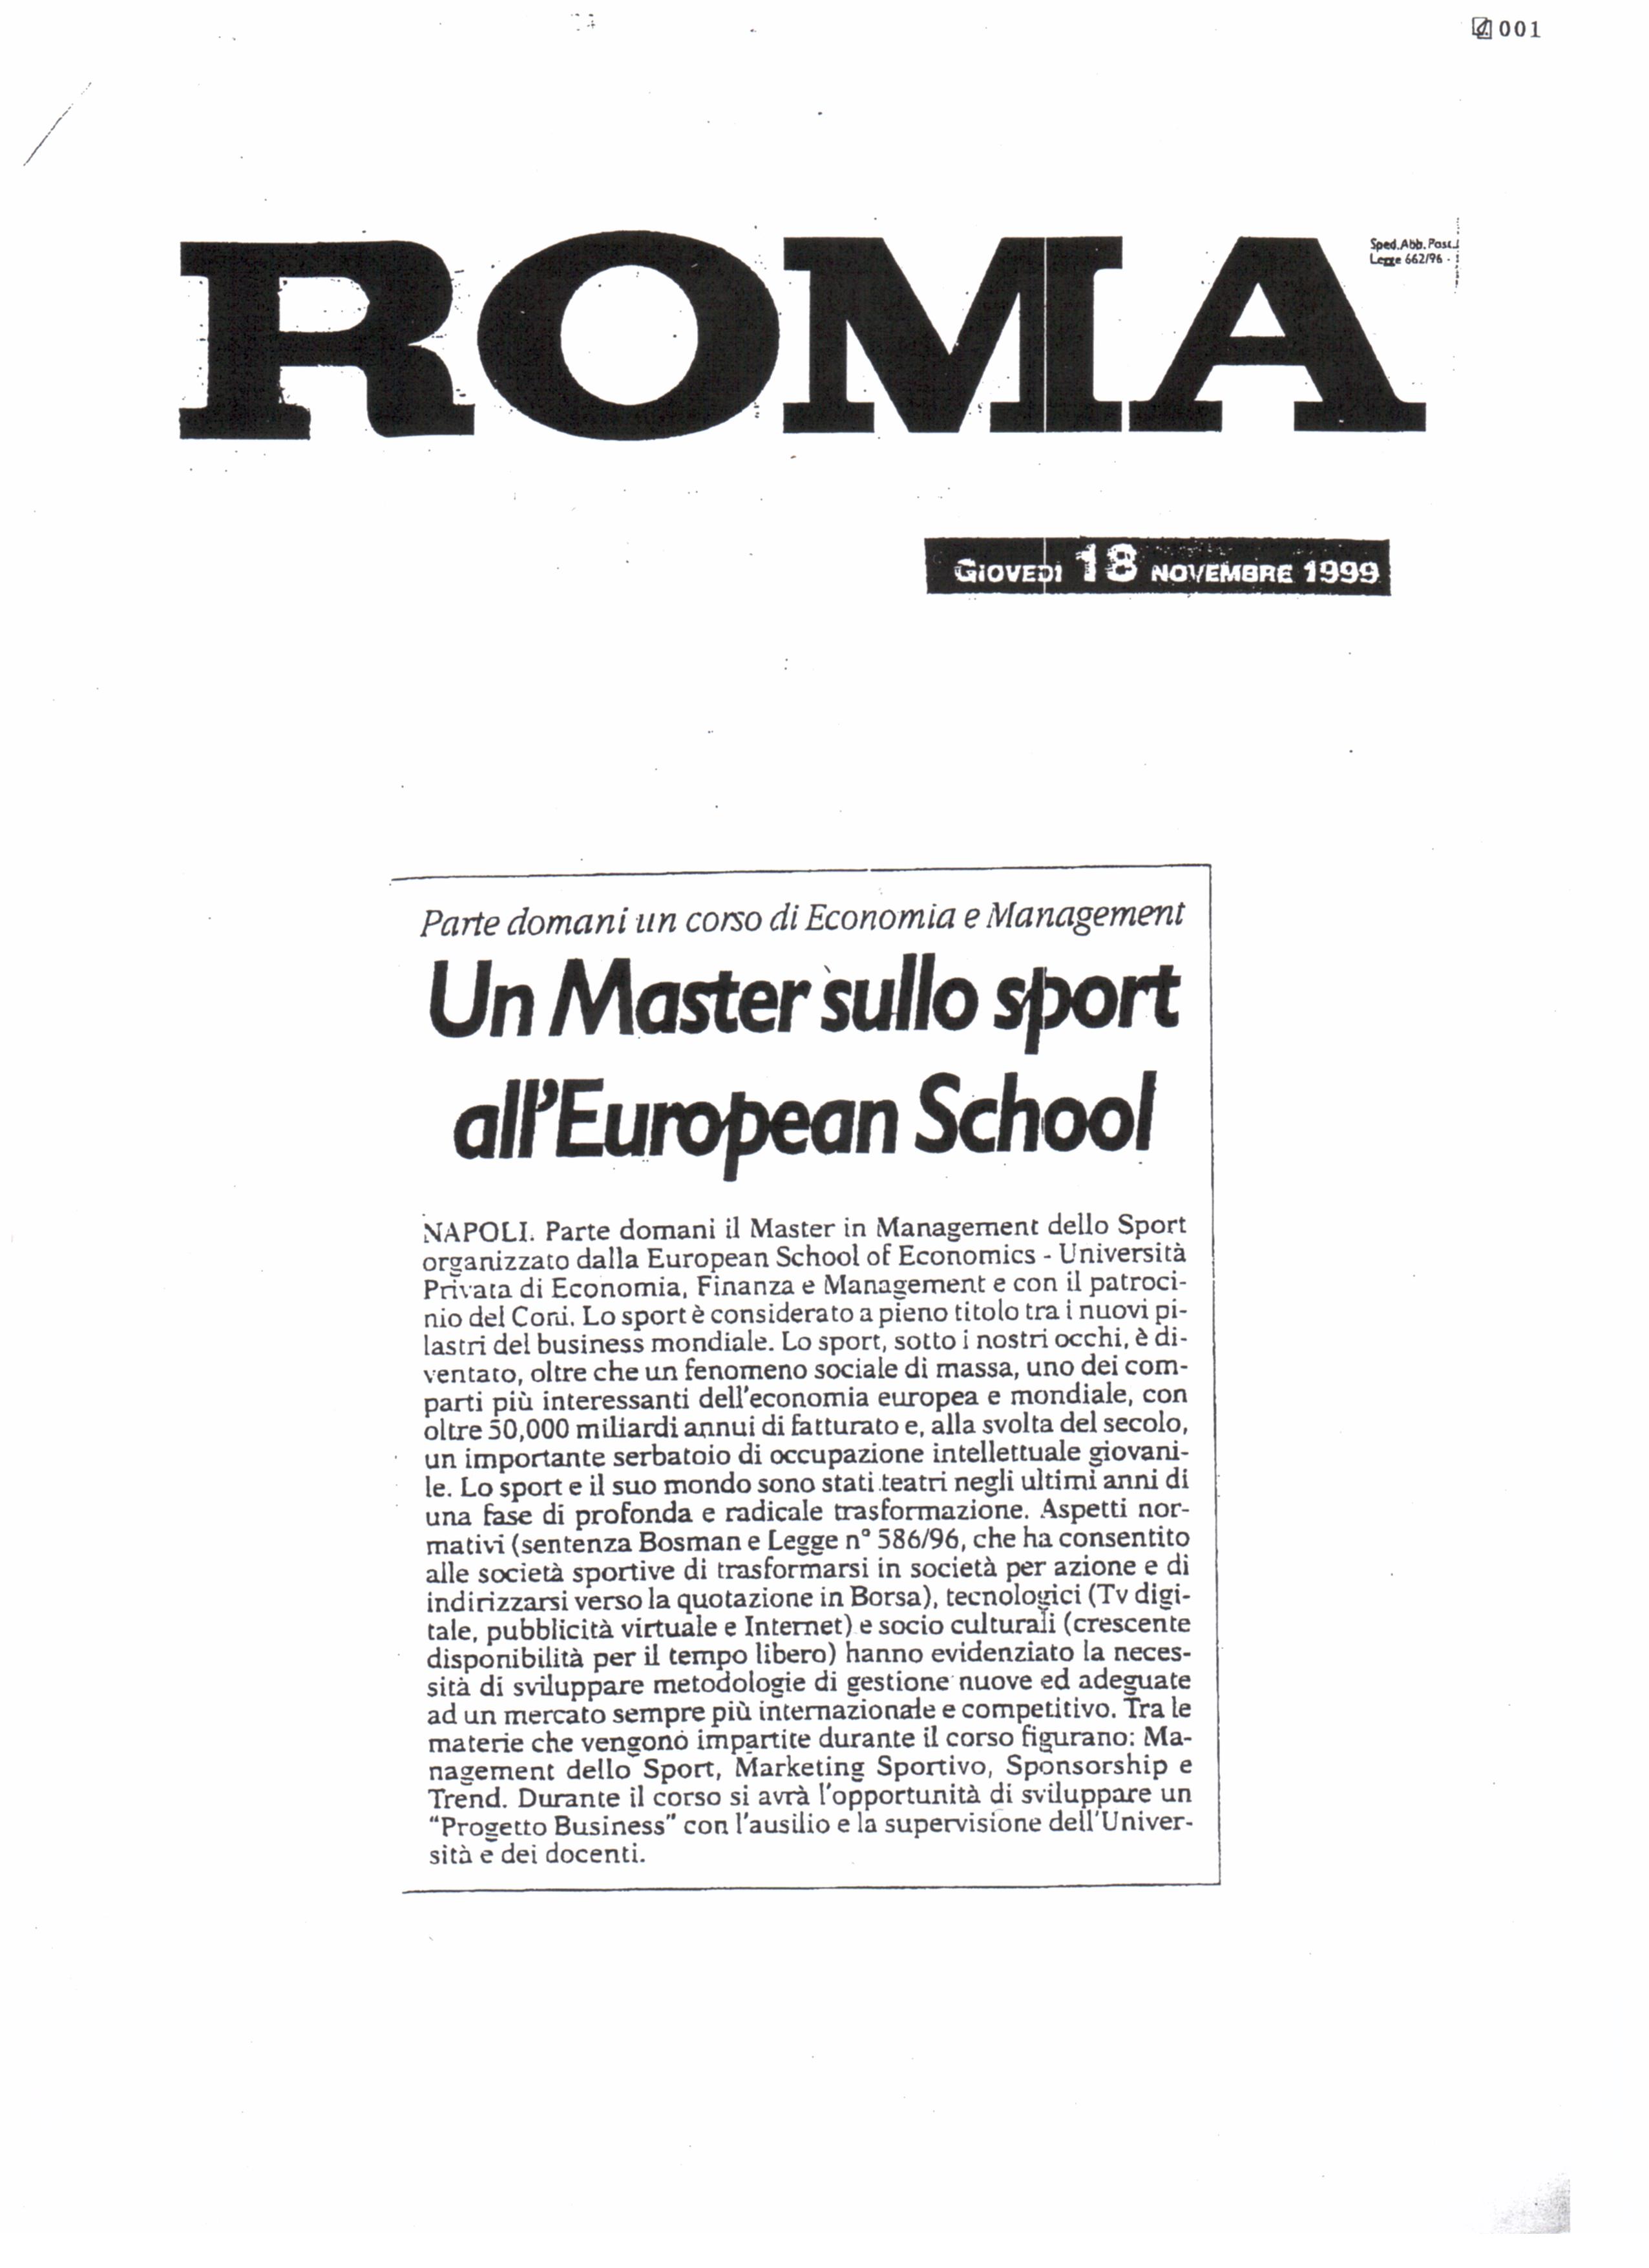 Un Master sullo Sport all'European School of Economics